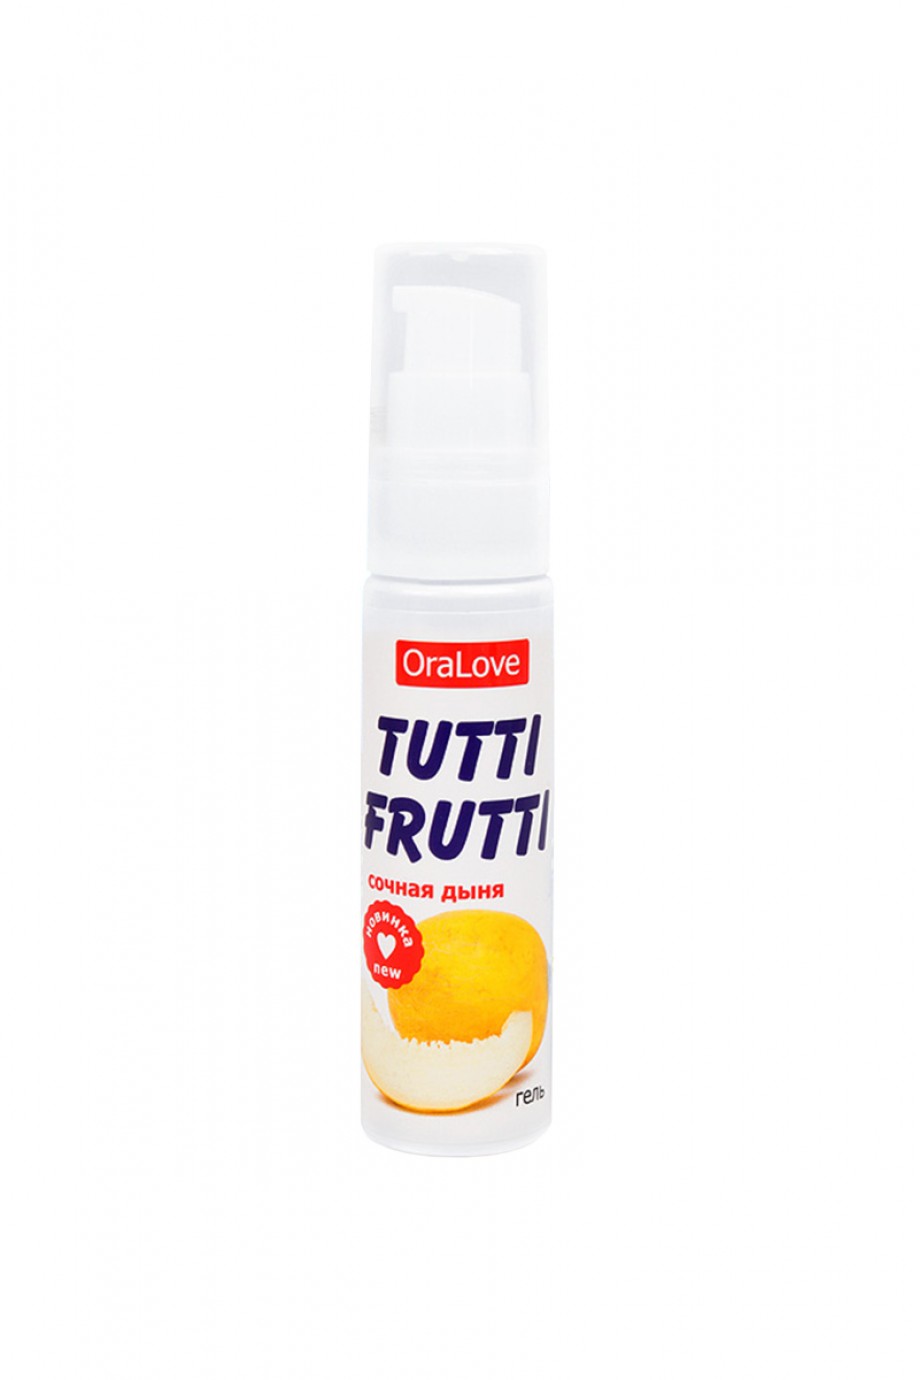 Съедобная гель-смазка TUTTI-FRUTTI для орального секса со вкусом сочной дыни, 30г